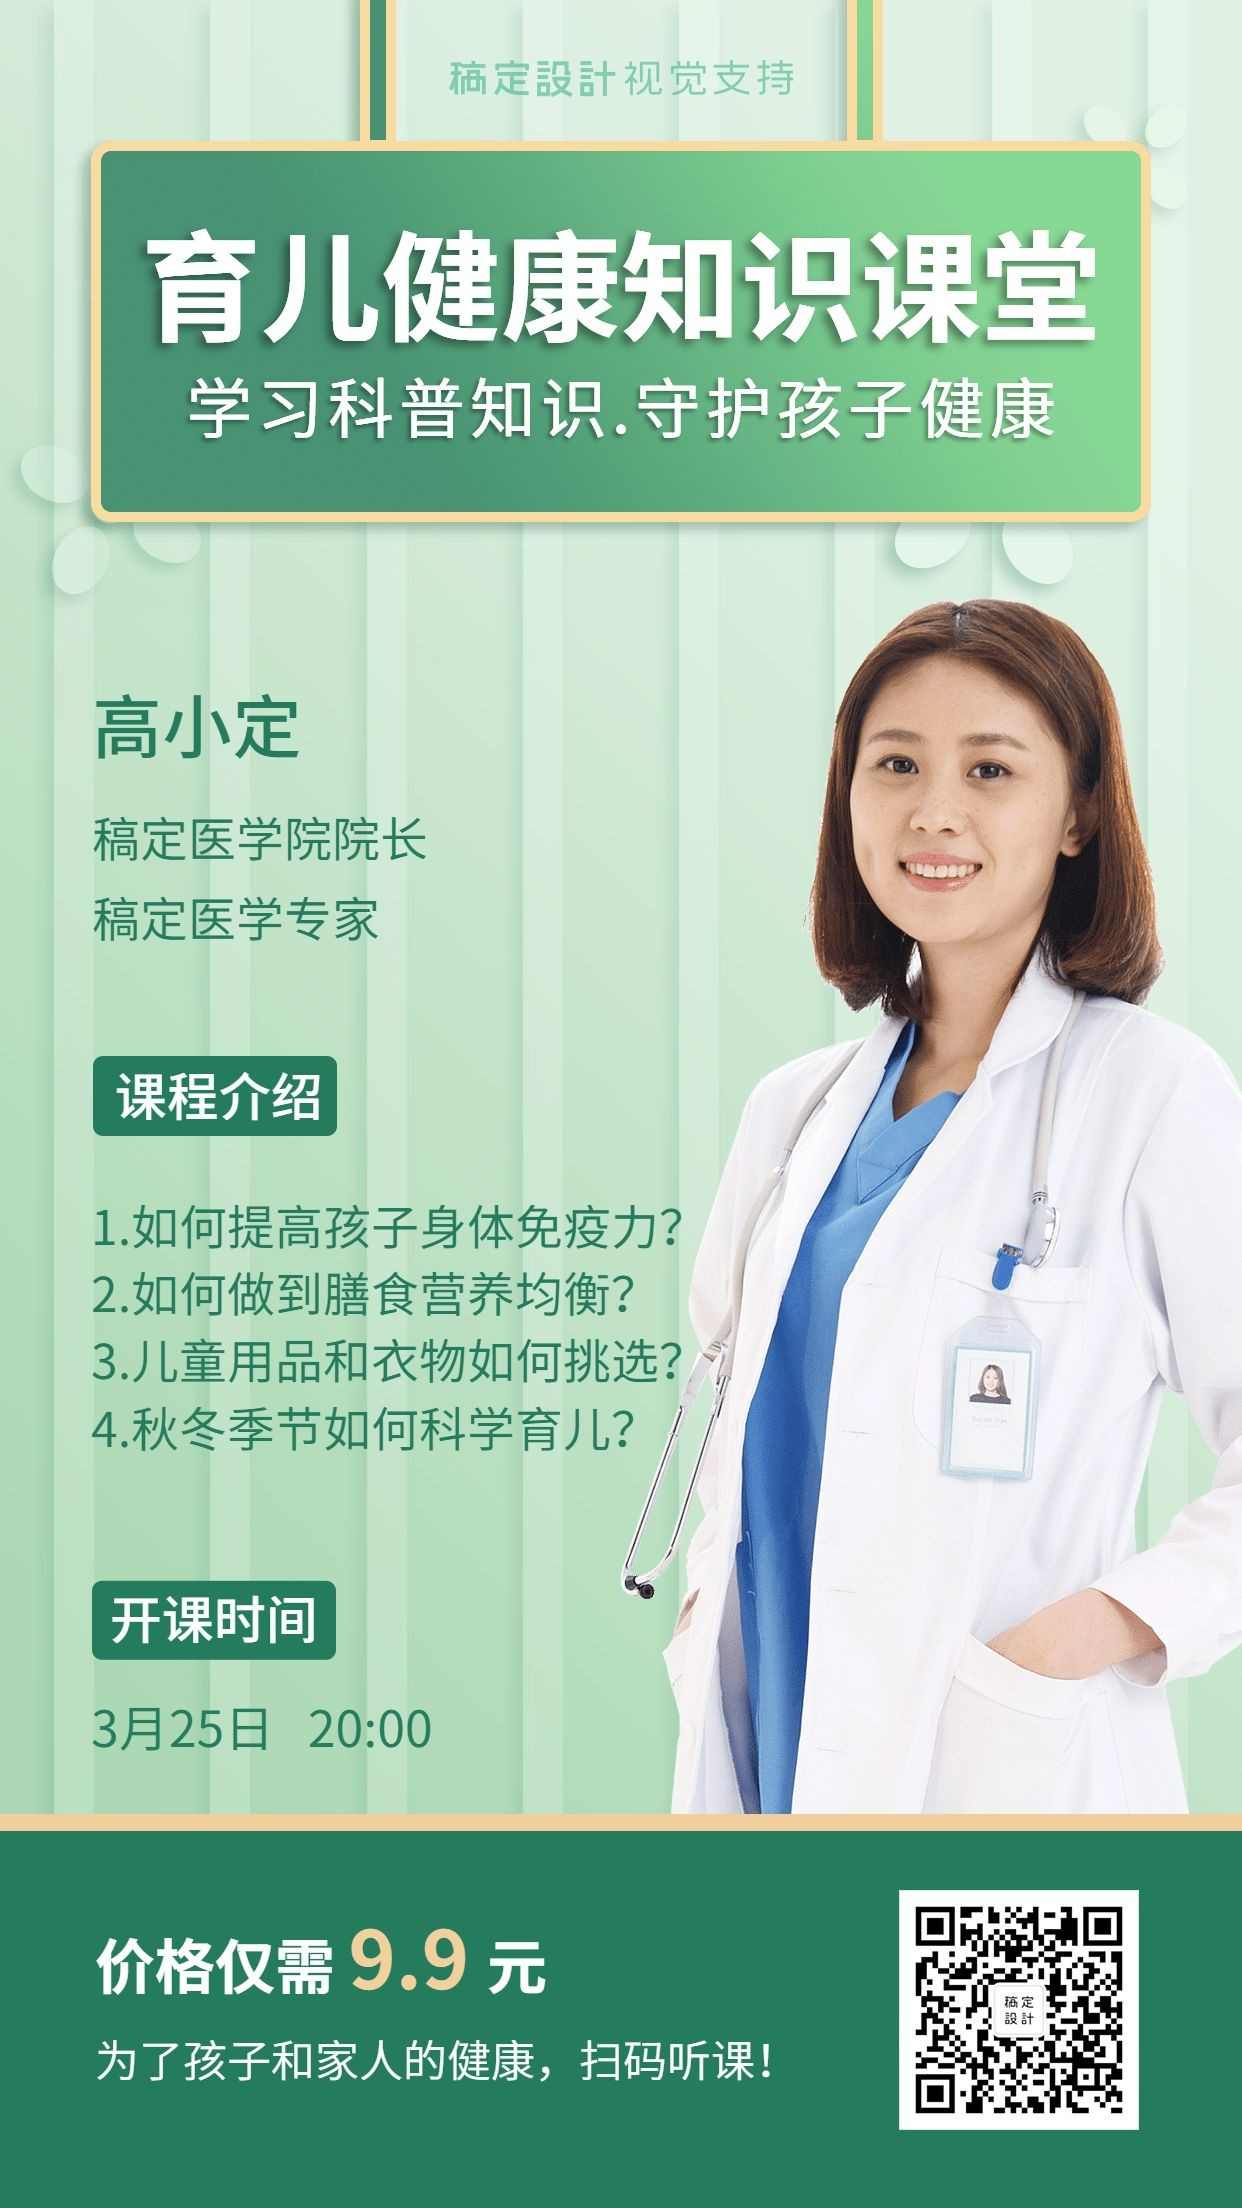 《饮食与健康》科普宣传册 - 中国环境诱变剂学会